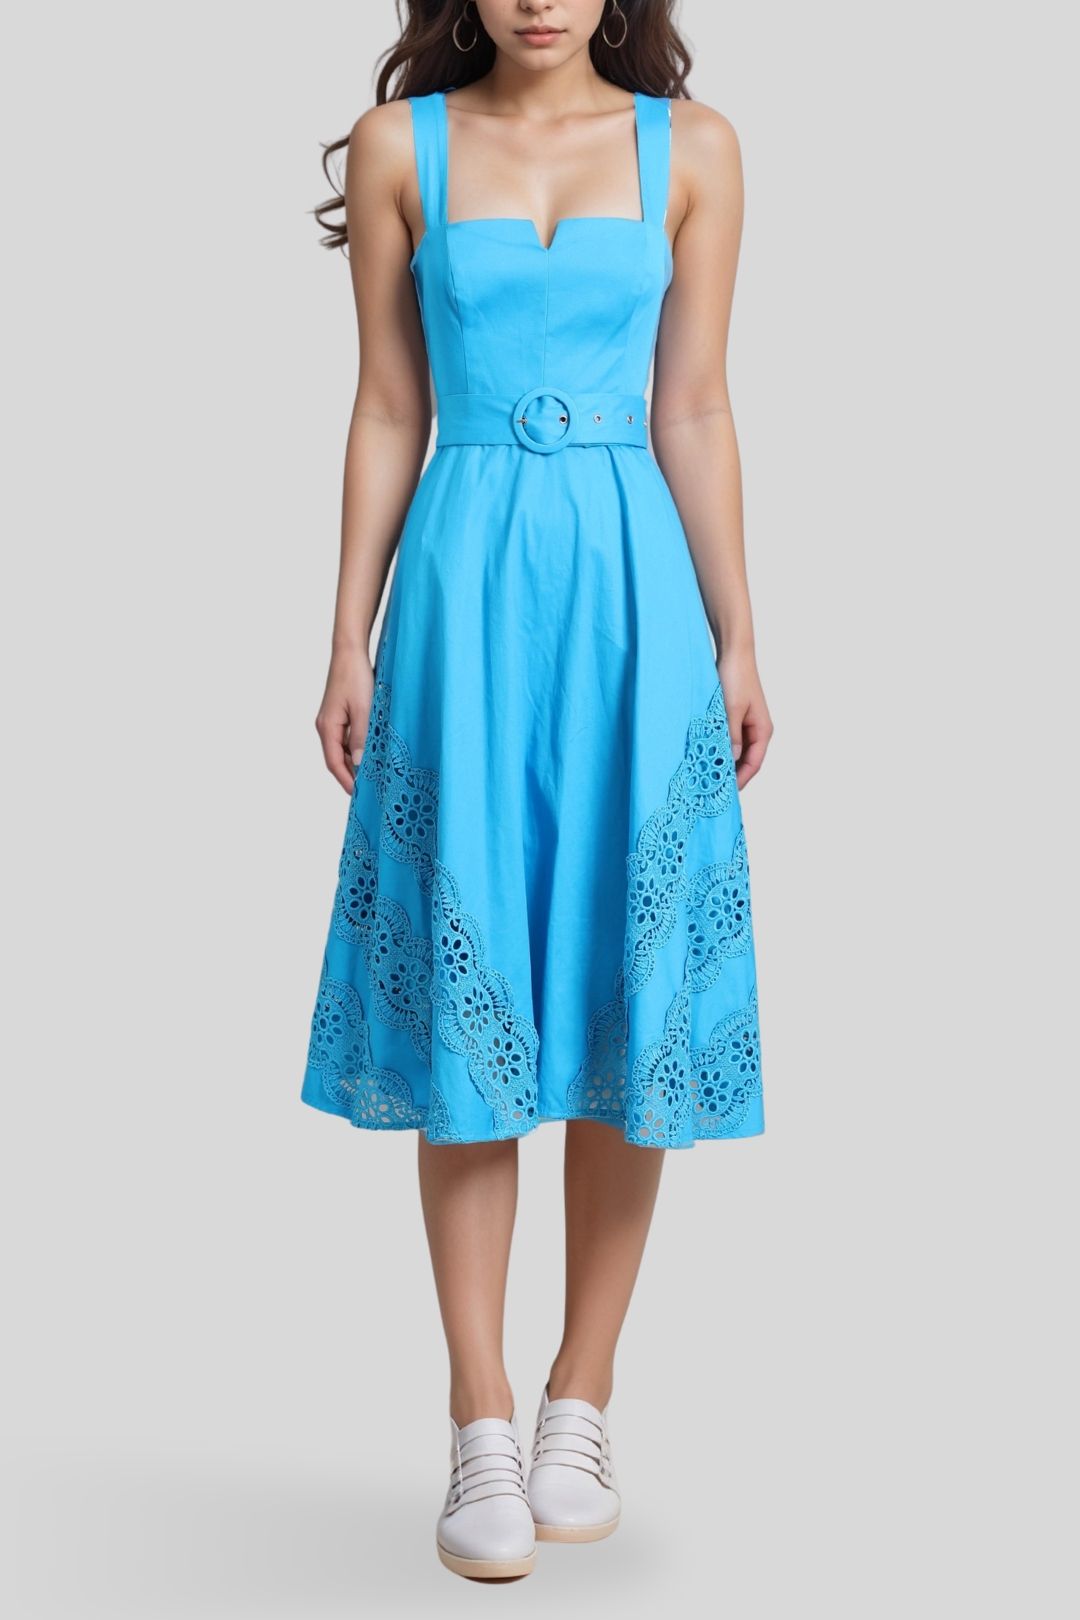 Portmans Summer Azure Belted Sleeveless Dress